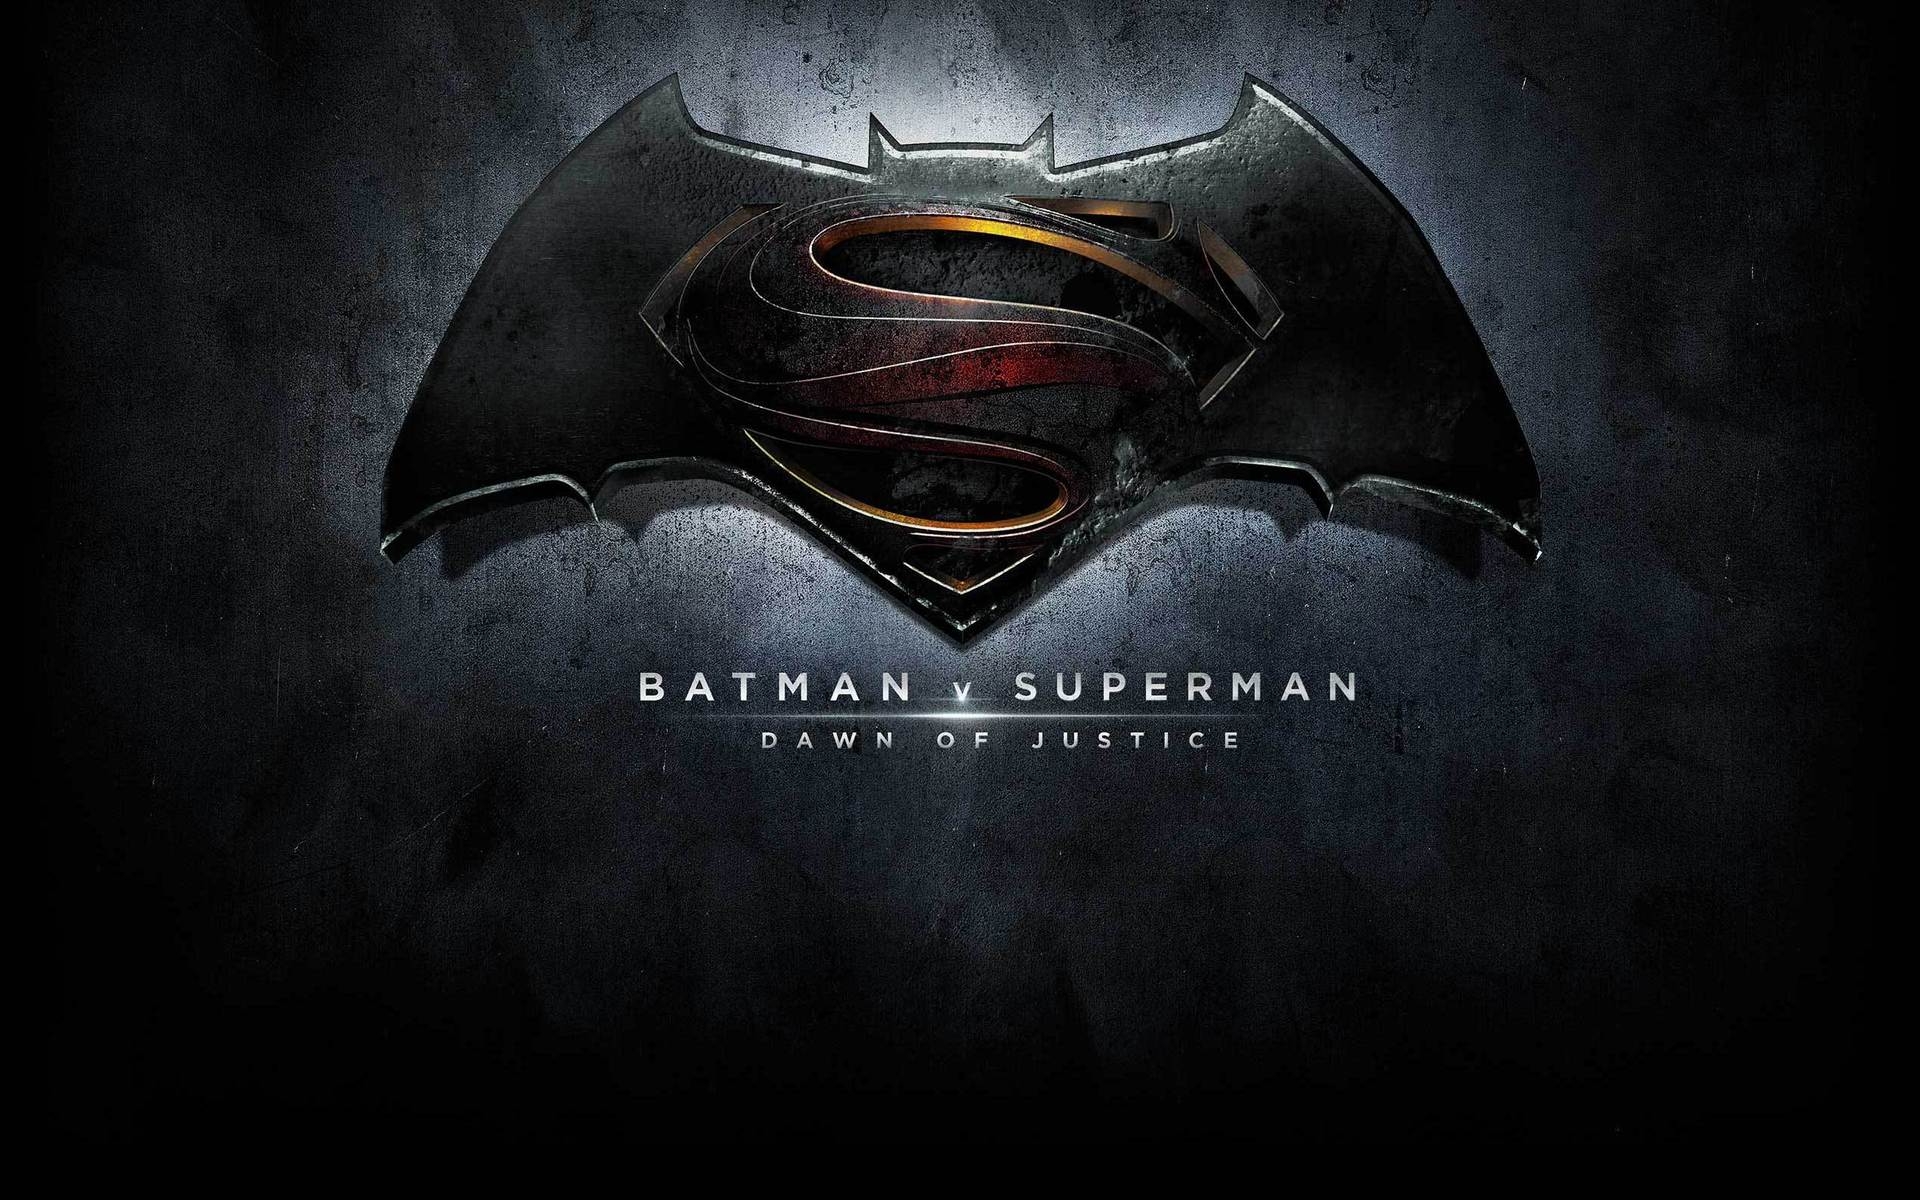 Batman vs Superman Logo HD Wallpaper - WallpaperFX